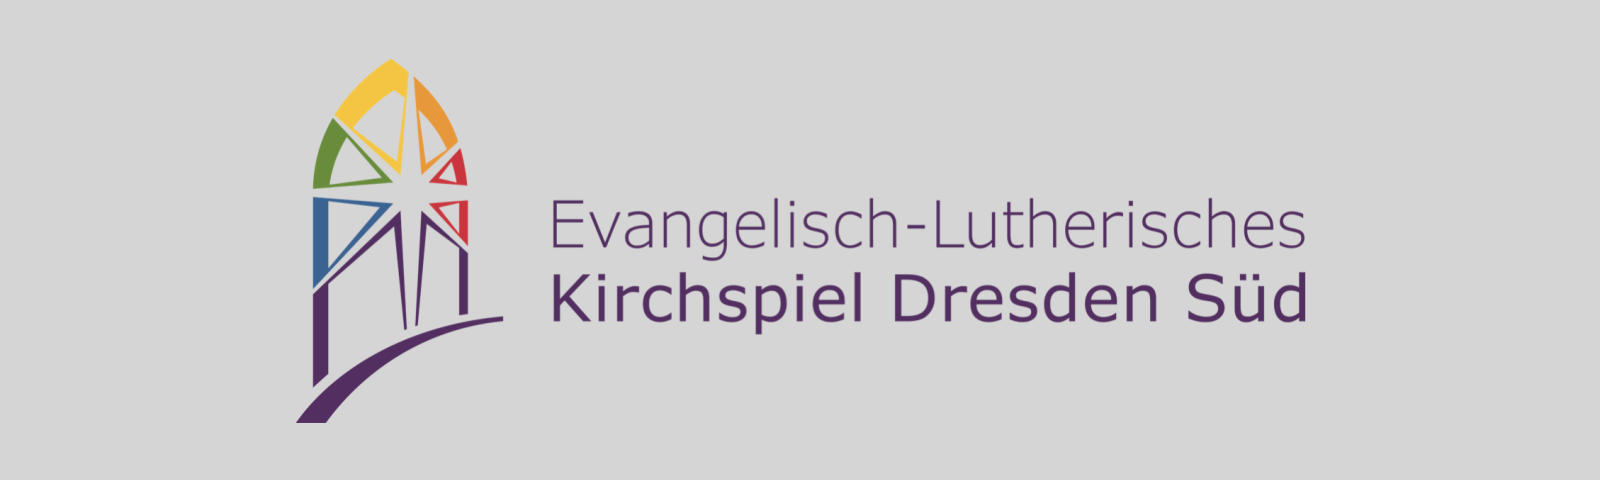 Logo Kirchspiel Dresden-Süd auf grauem Hintergrund